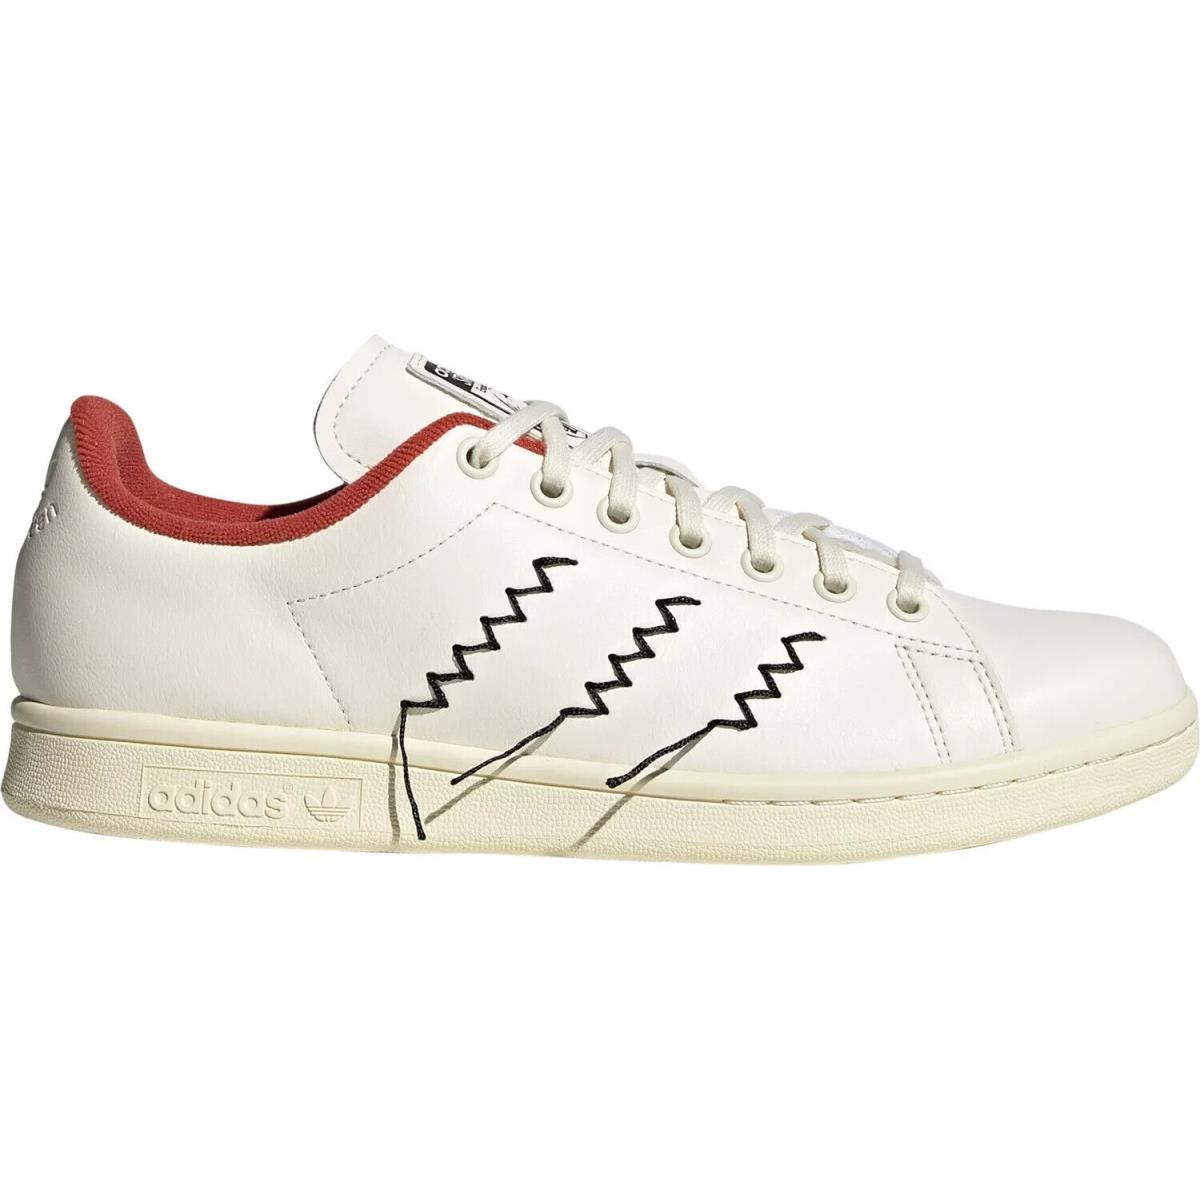 Adidas Stan Smith Disney HP5580 Pinocchio Athletic Shoes Sz 13 - Panton & White